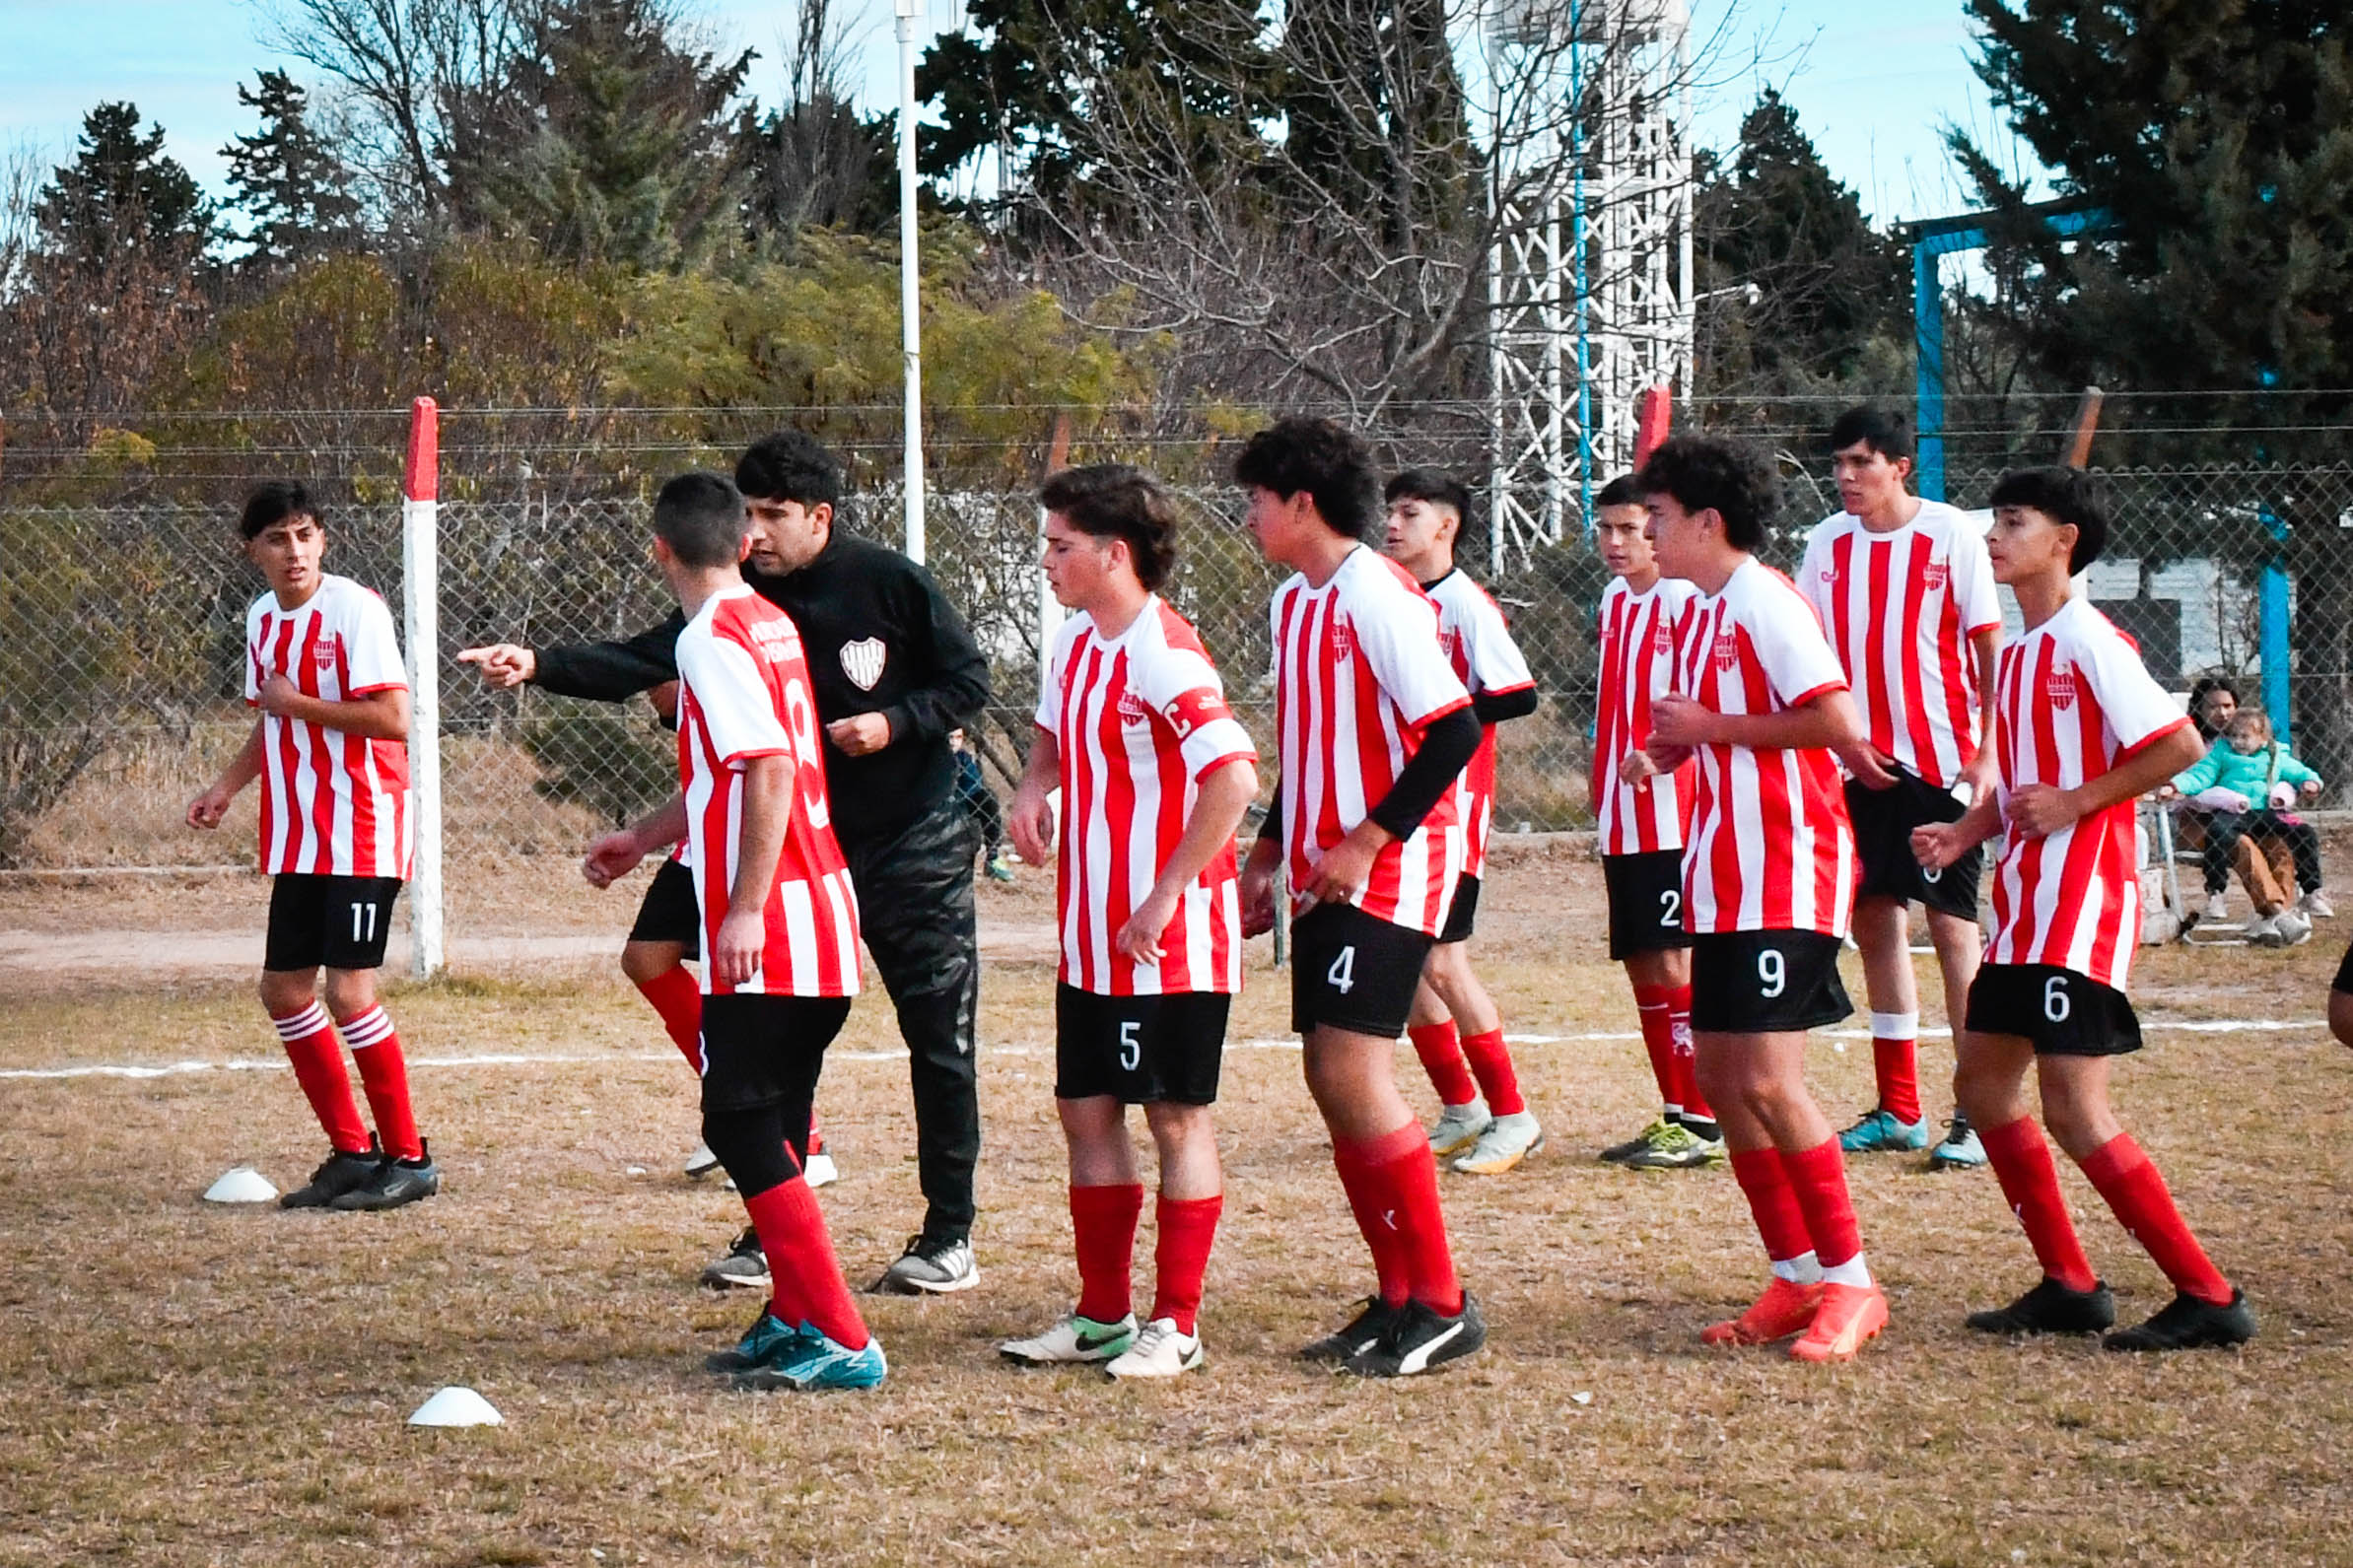 El Club Deportivo y Cultural San Martín accedió al beneficio del programa “Fortaleciendo Mi Club”